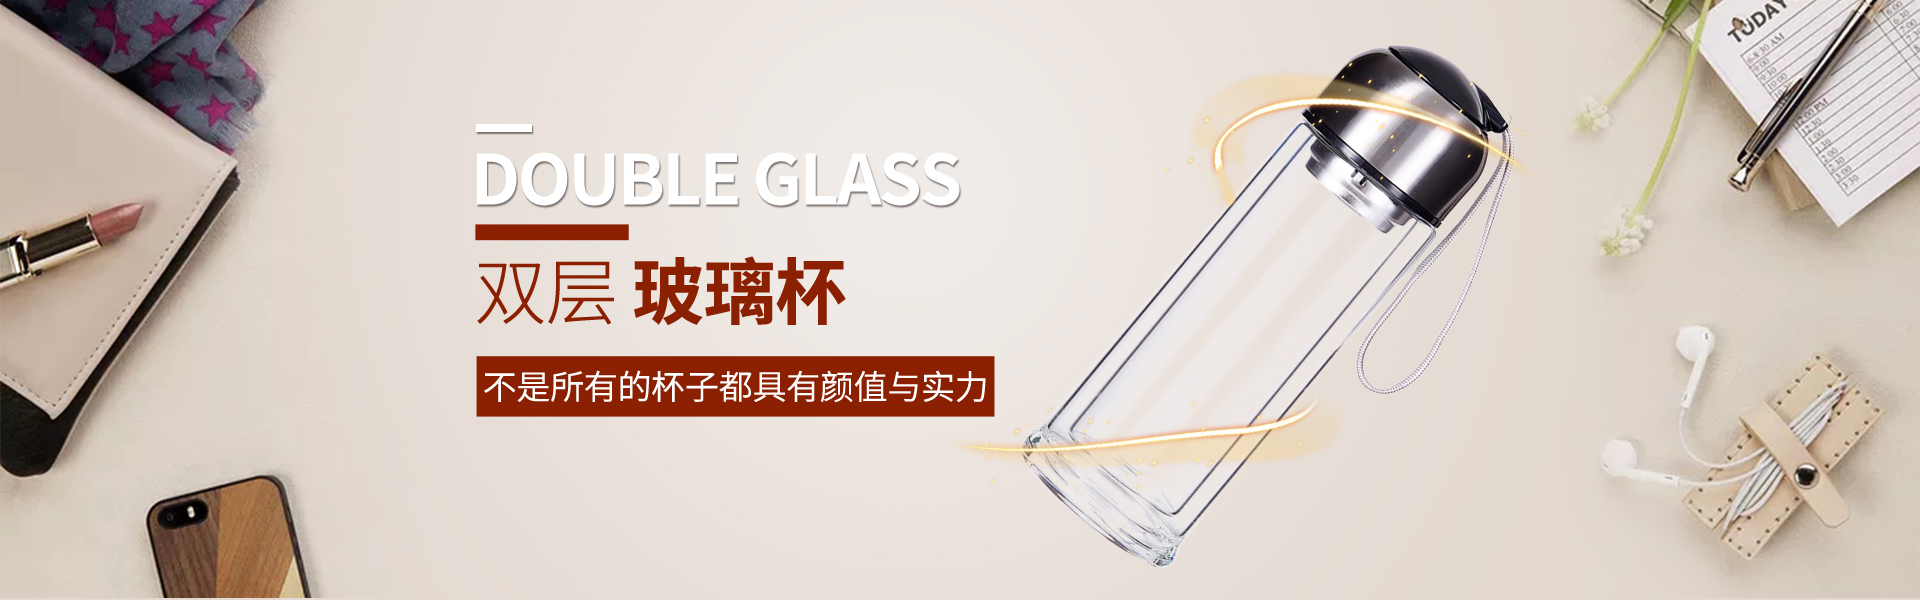 澳门信誉最好的十大平台杯业玻璃杯